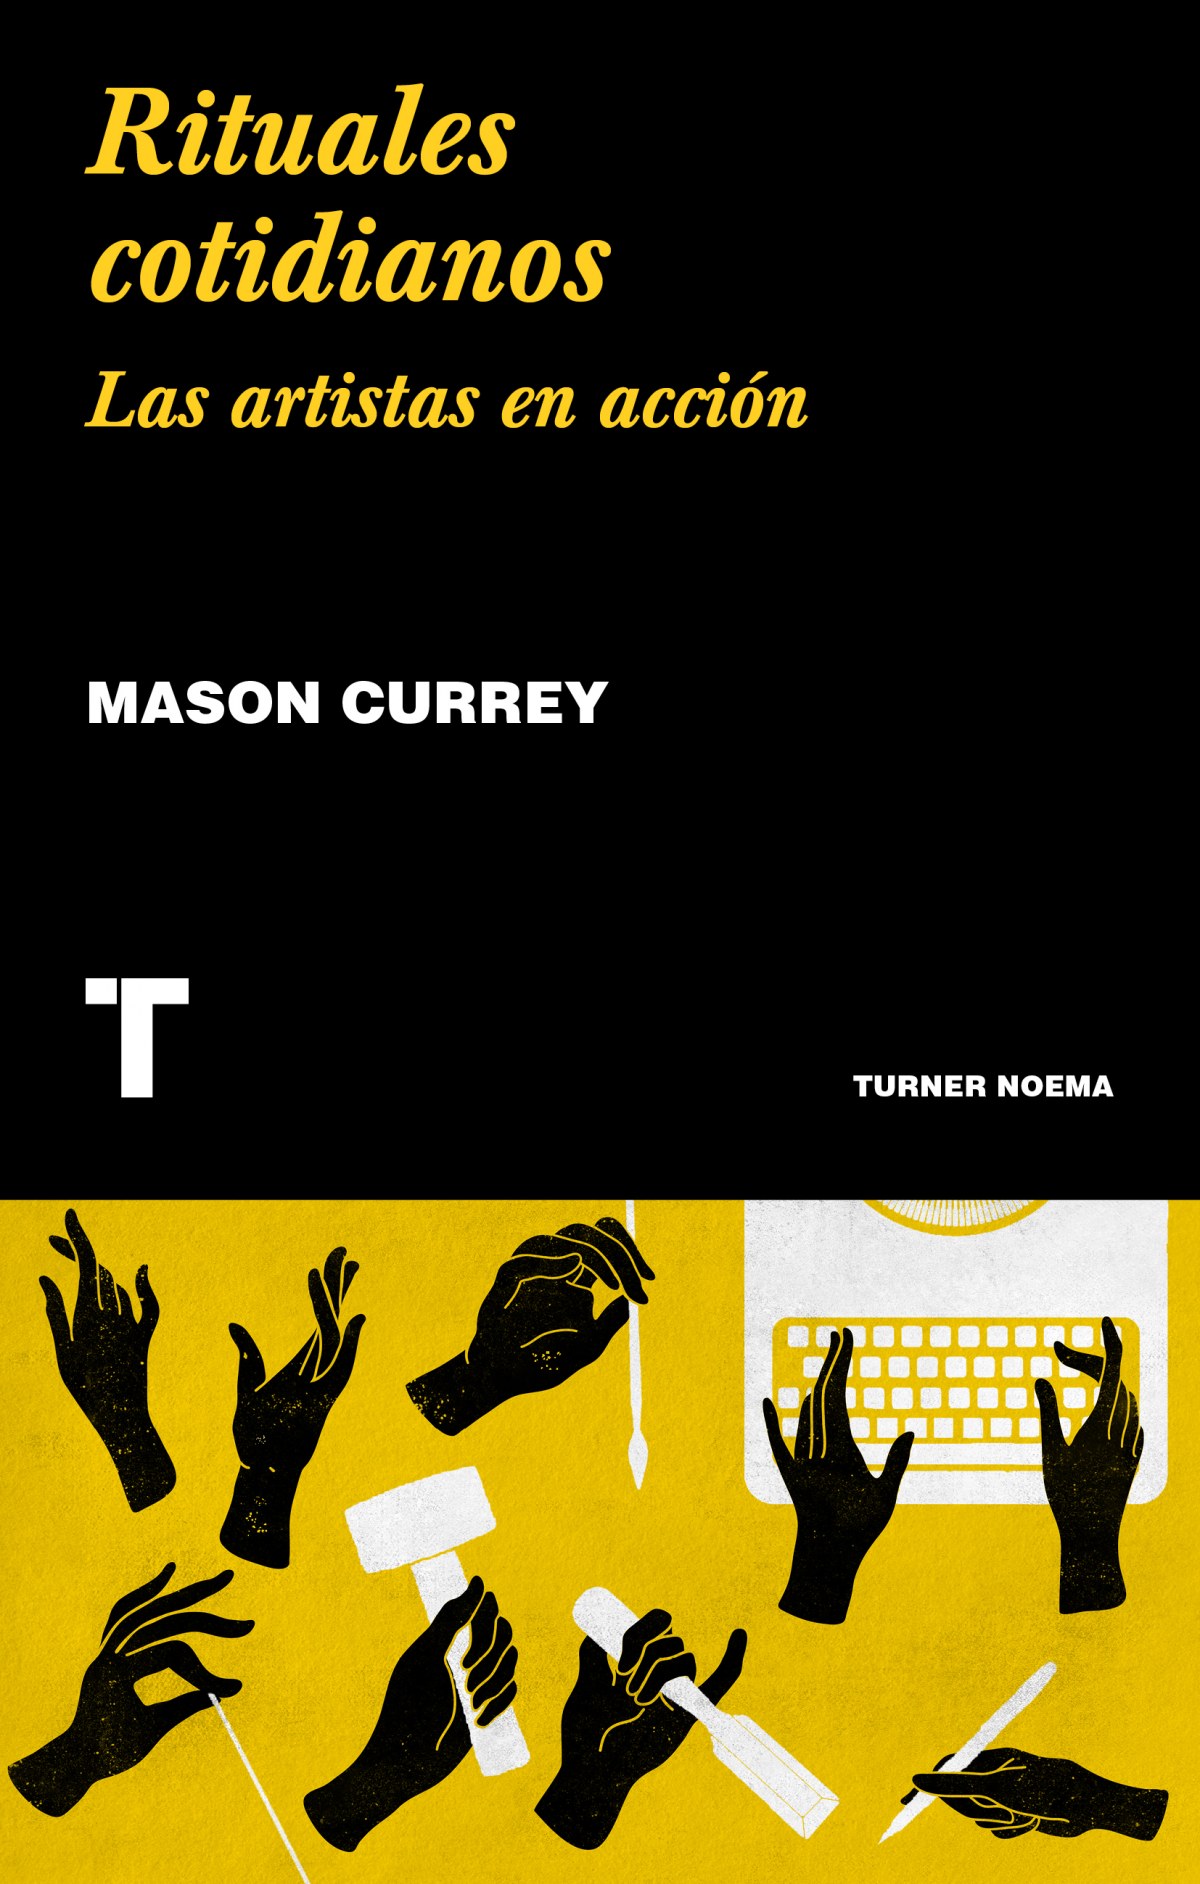 Rituales cotidianos Las artistas en acción - Currey, Mason